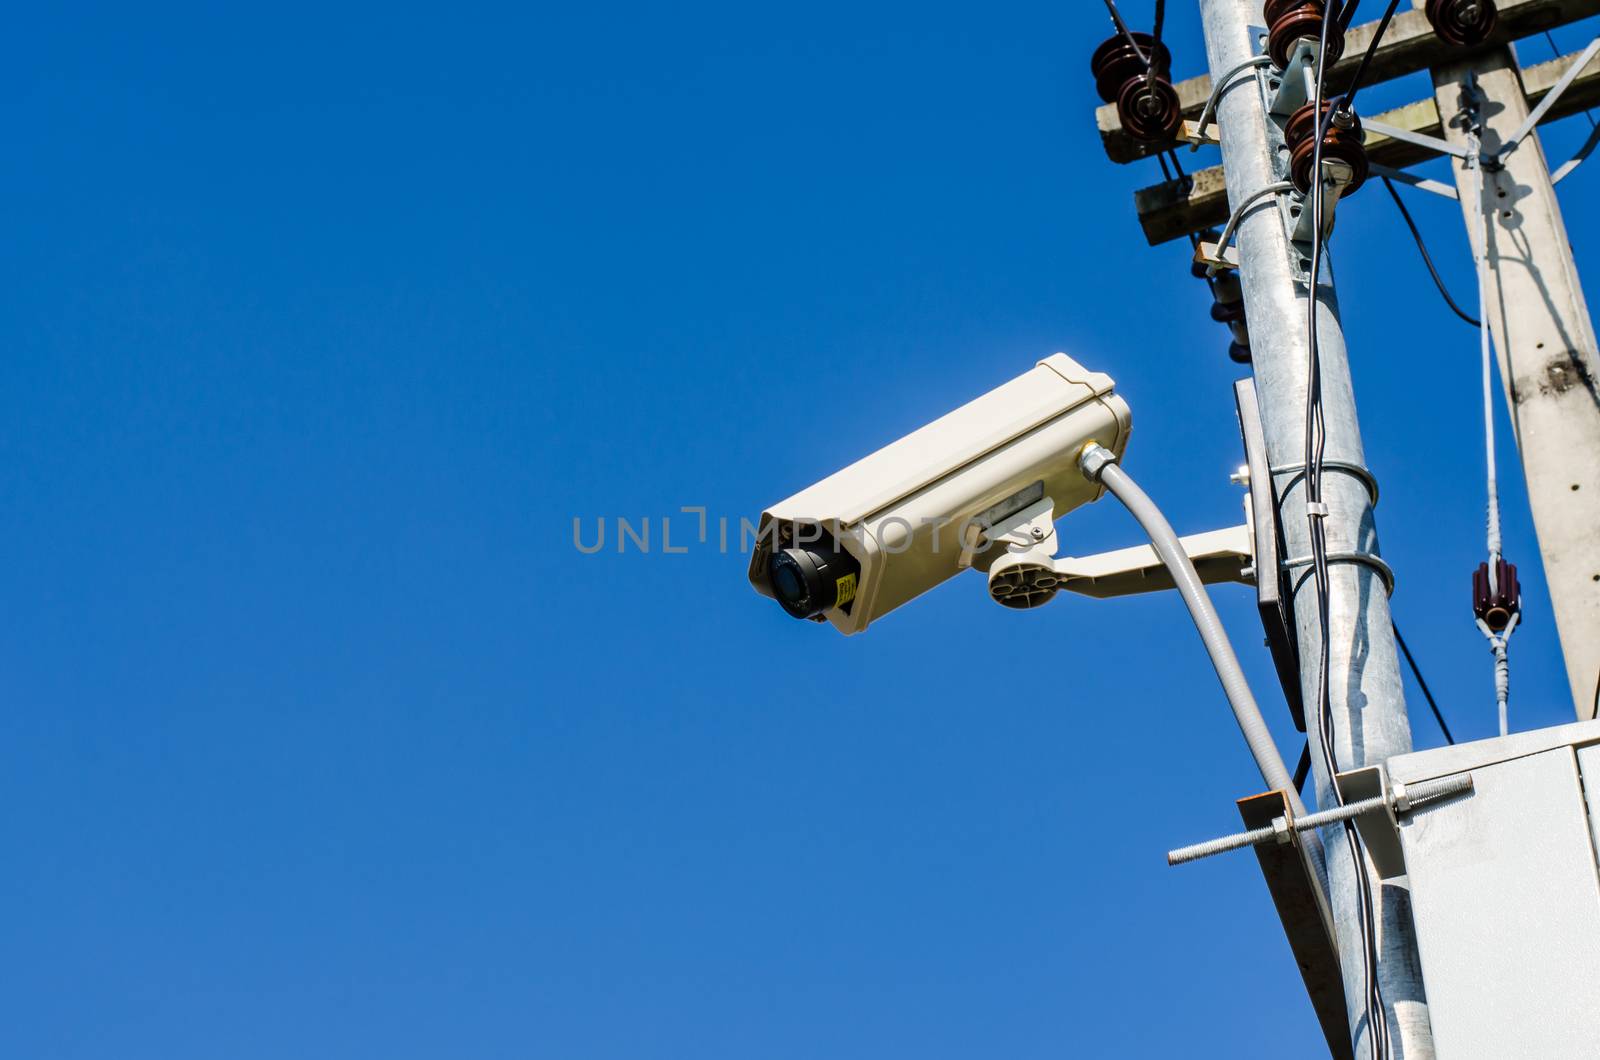 CCTV on blue sky background by photobyphotoboy